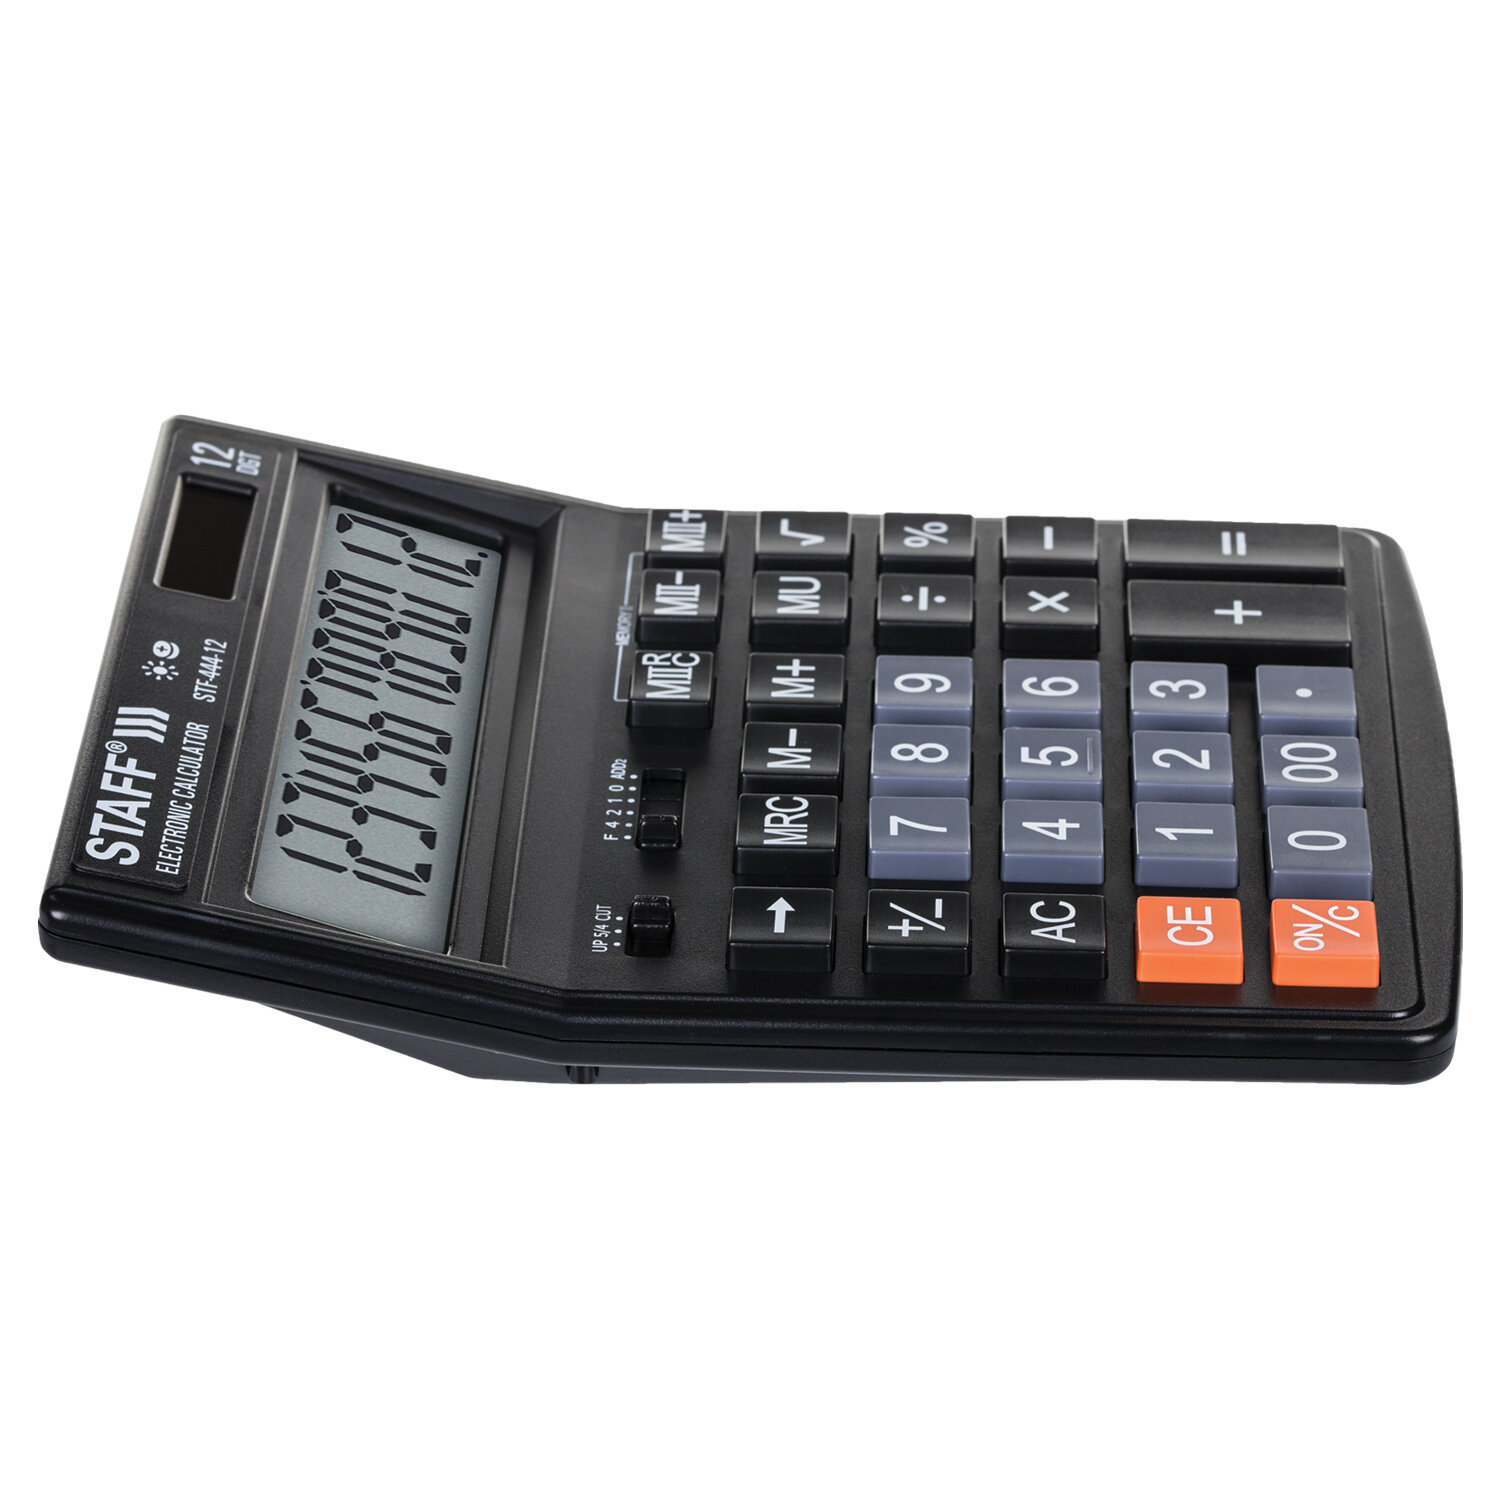 Калькулятор STAFF STF-444-12, 12 разрядов от интернет-магазина kancelyar.by